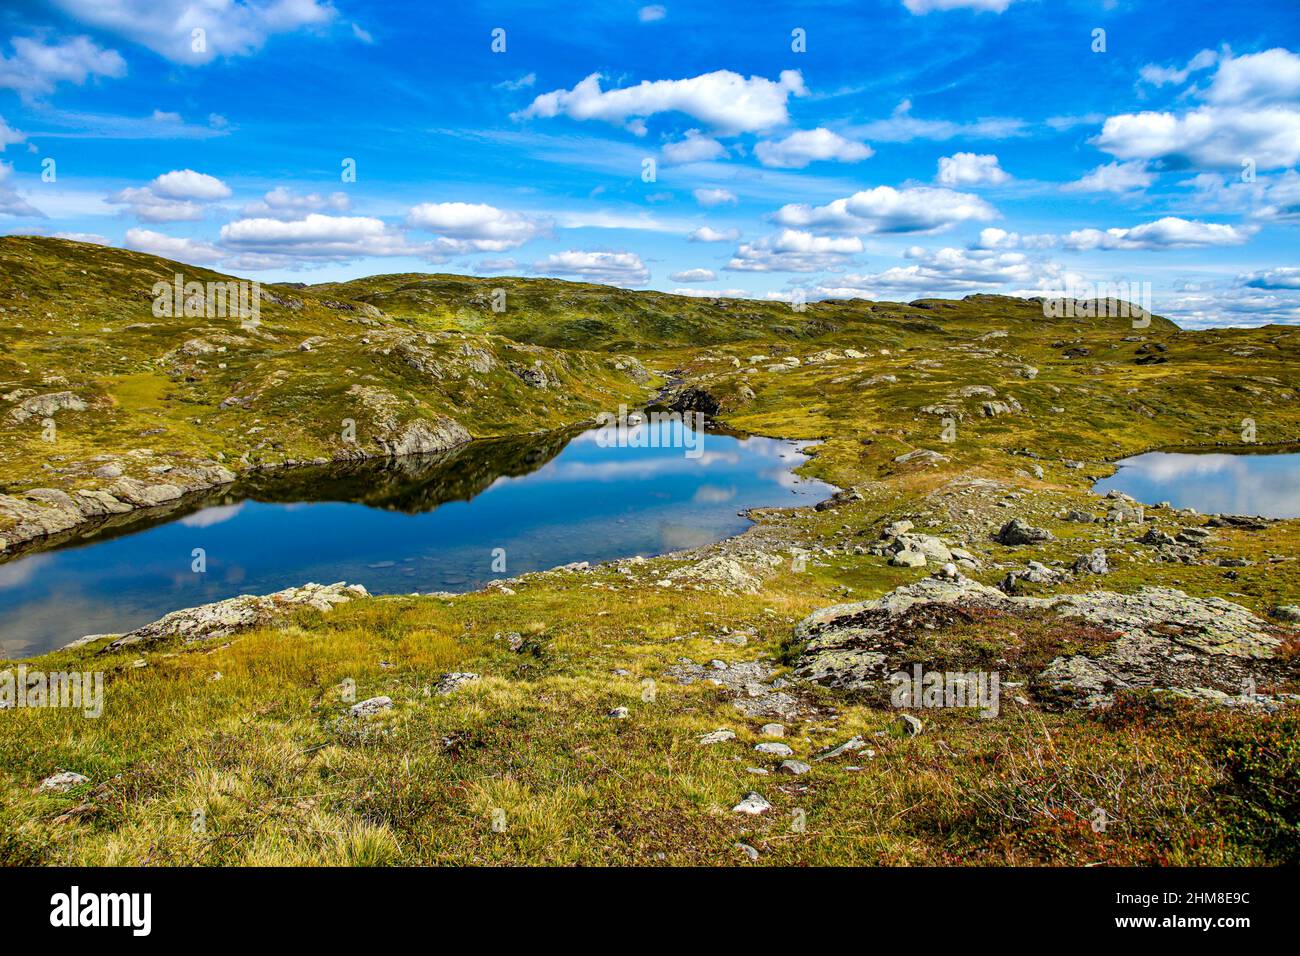 Laghi con il cielo estivo riflessi nell'acqua pura sulle colline delle Highlands norvegesi, altopiano Hardanger, Hardangervidda Nationalpark, Norvegia. Foto Stock